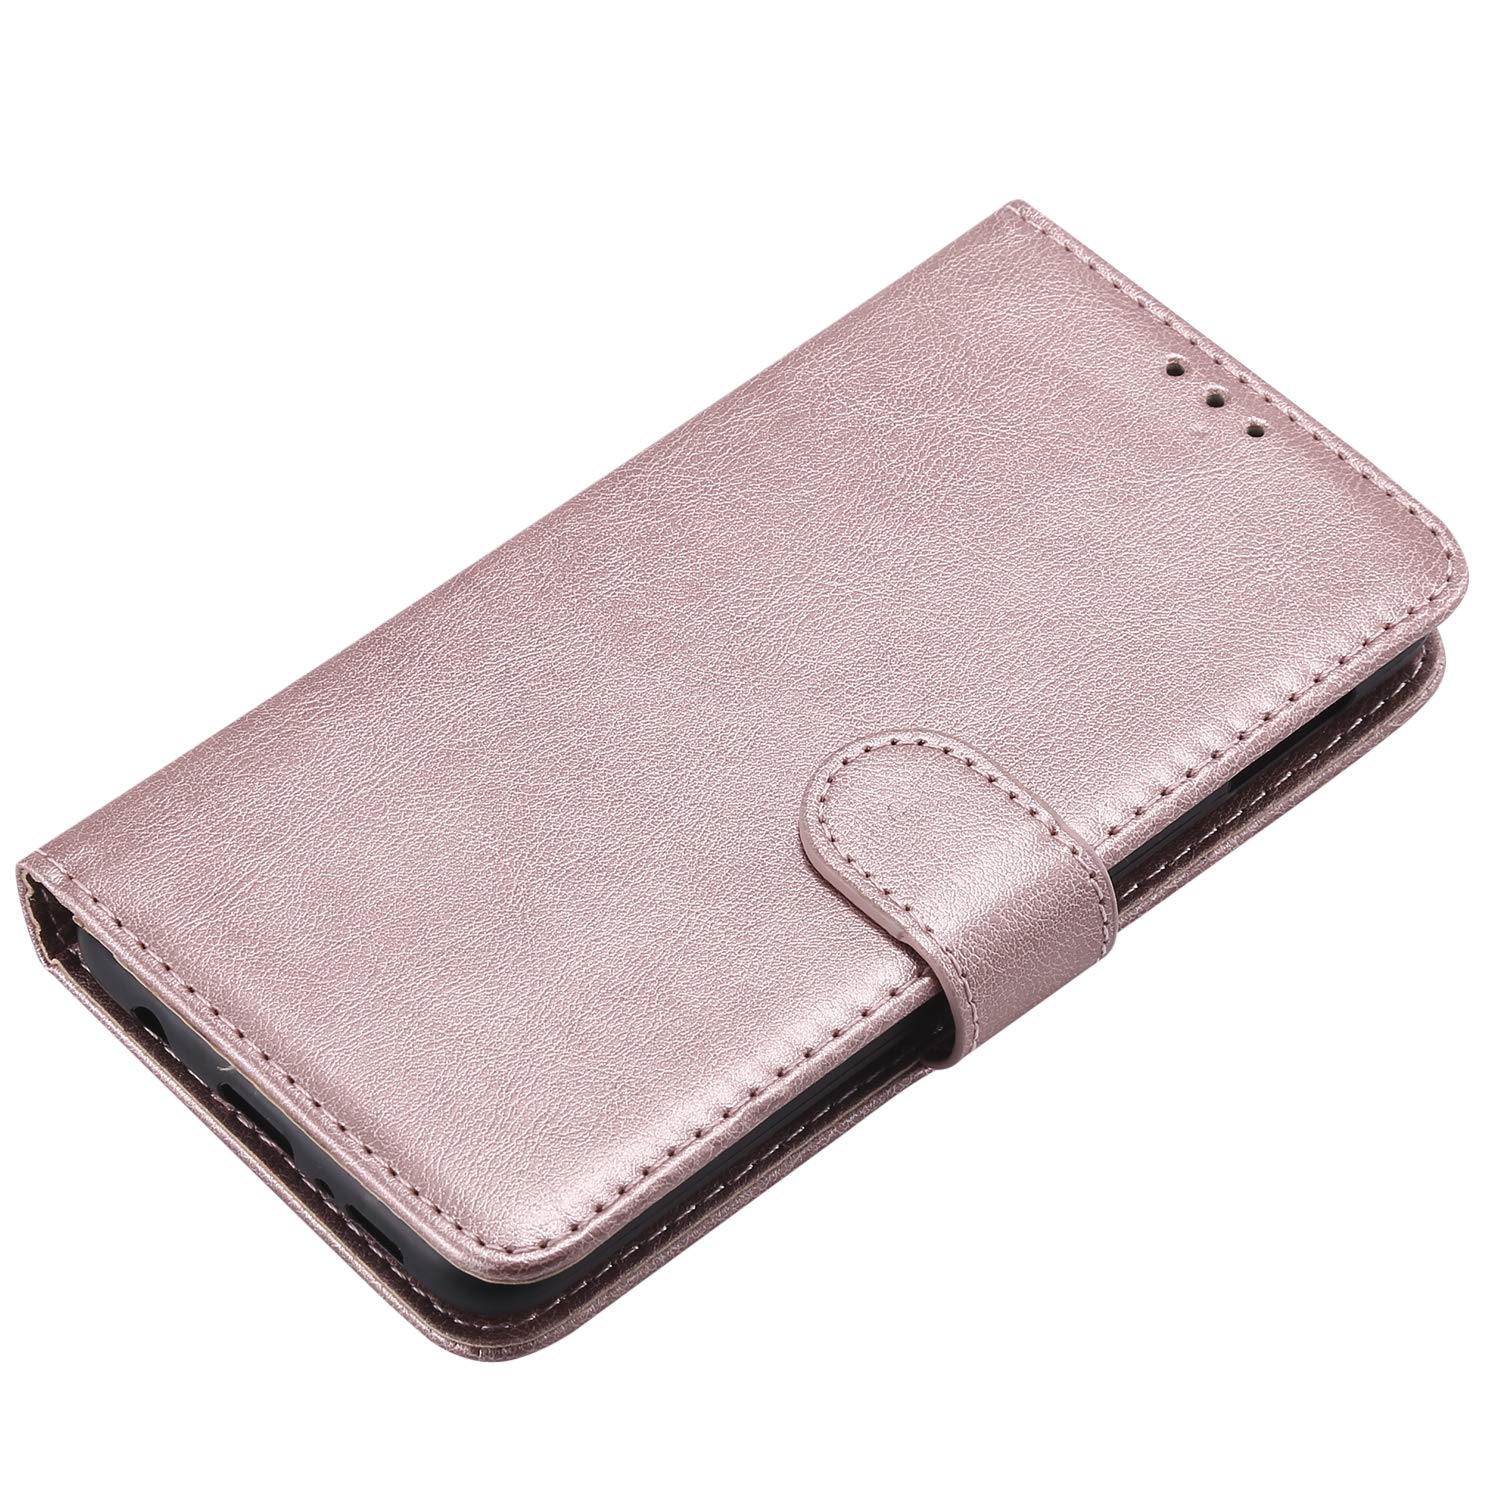 Base Folio Exec Wallet Case Samsung Galaxy S10e - Rose